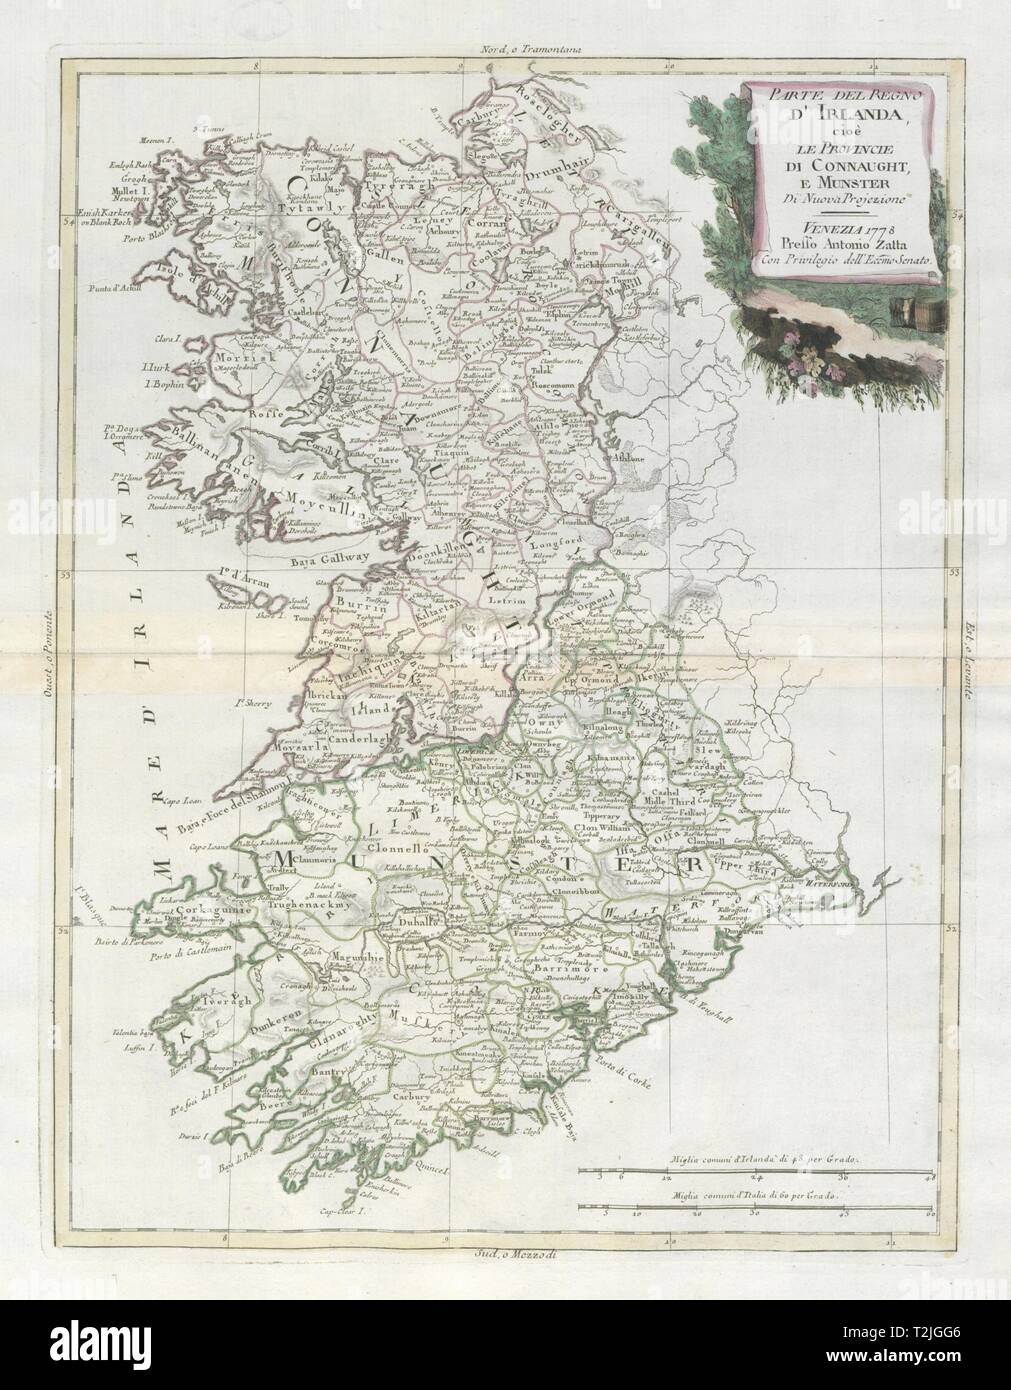 'Parte del Regno d'Irlanda… Connaught e Munster' Western Ireland. ZATTA 1779 map Stock Photo